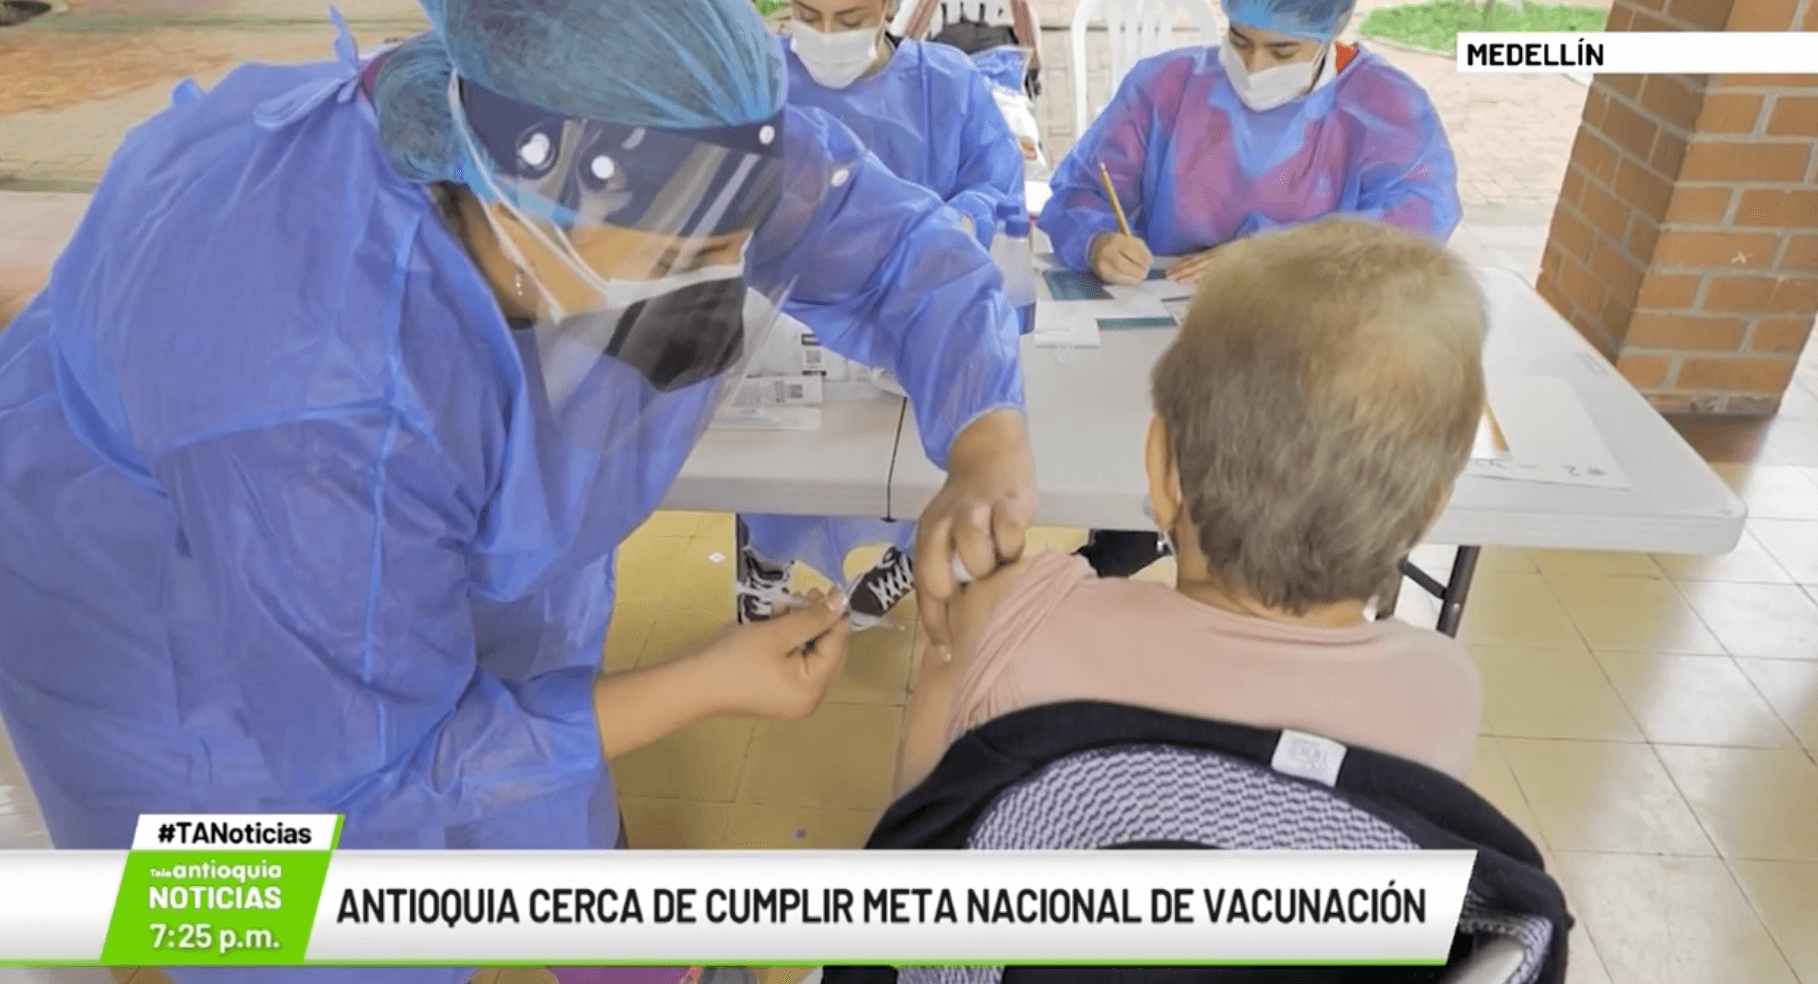 Antioquia cerca de cumplir meta nacional de vacunación